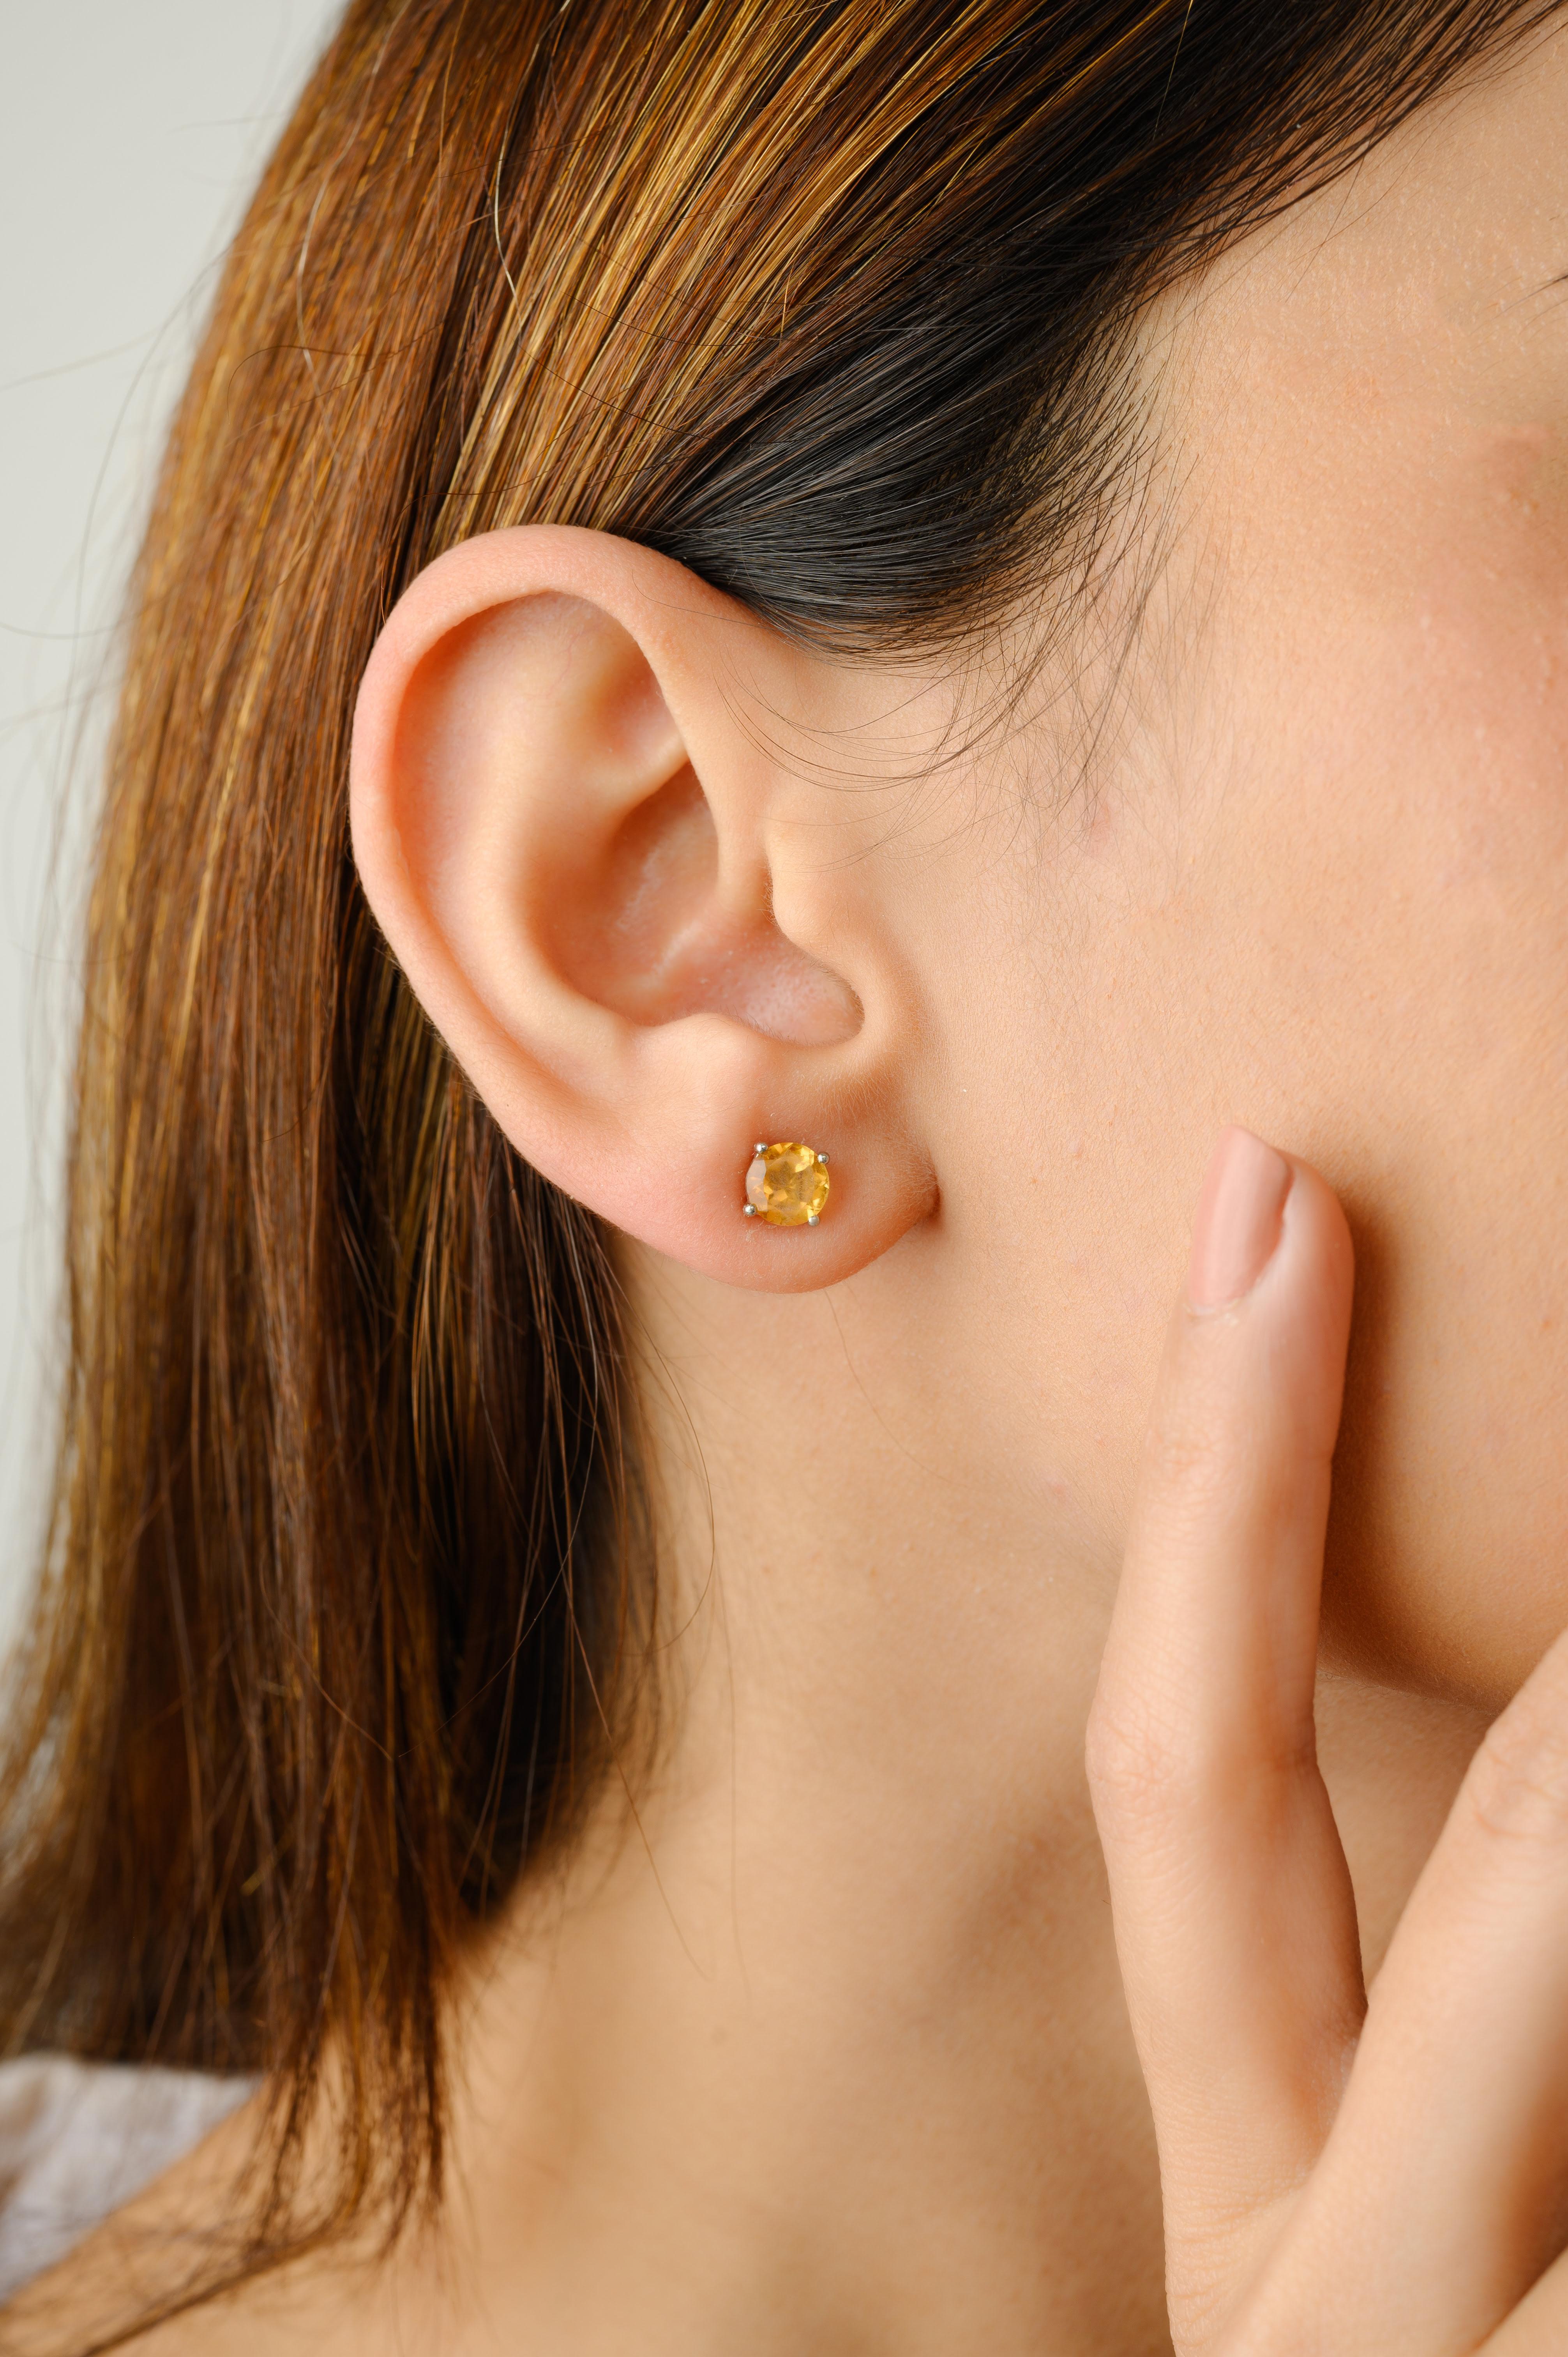 Les boucles d'oreilles solitaires en or 14 carats avec citrine à facettes vous permettront d'affirmer votre style. Vous aurez besoin de boucles d'oreilles pour affirmer votre look. Ces boucles d'oreilles créent un look étincelant et luxueux avec des